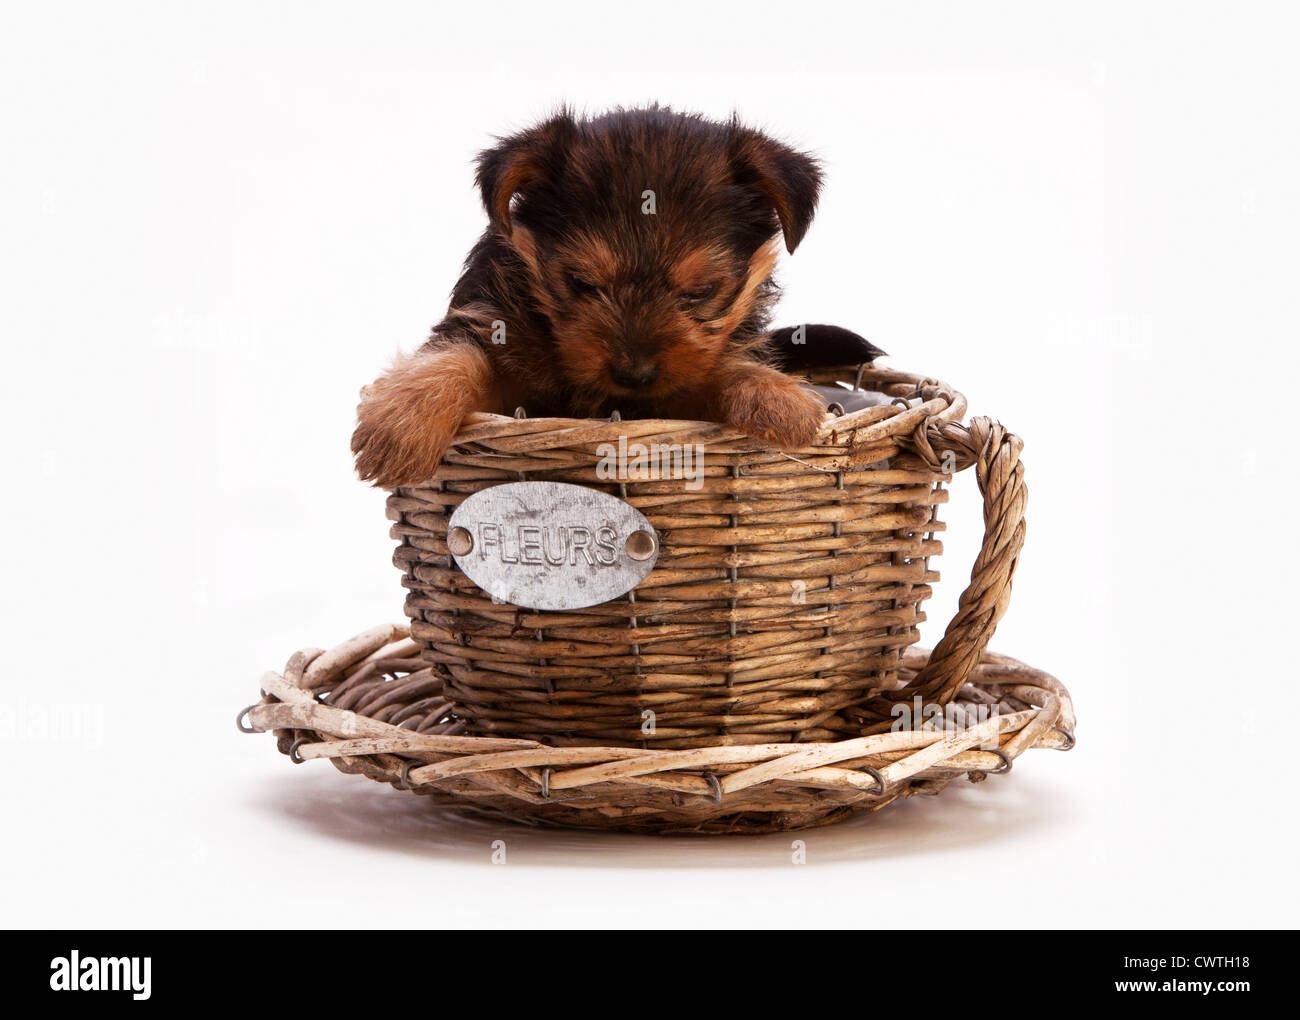 Un chiot yorkshire terrier dans une tasse ou un panier en osier Banque D'Images